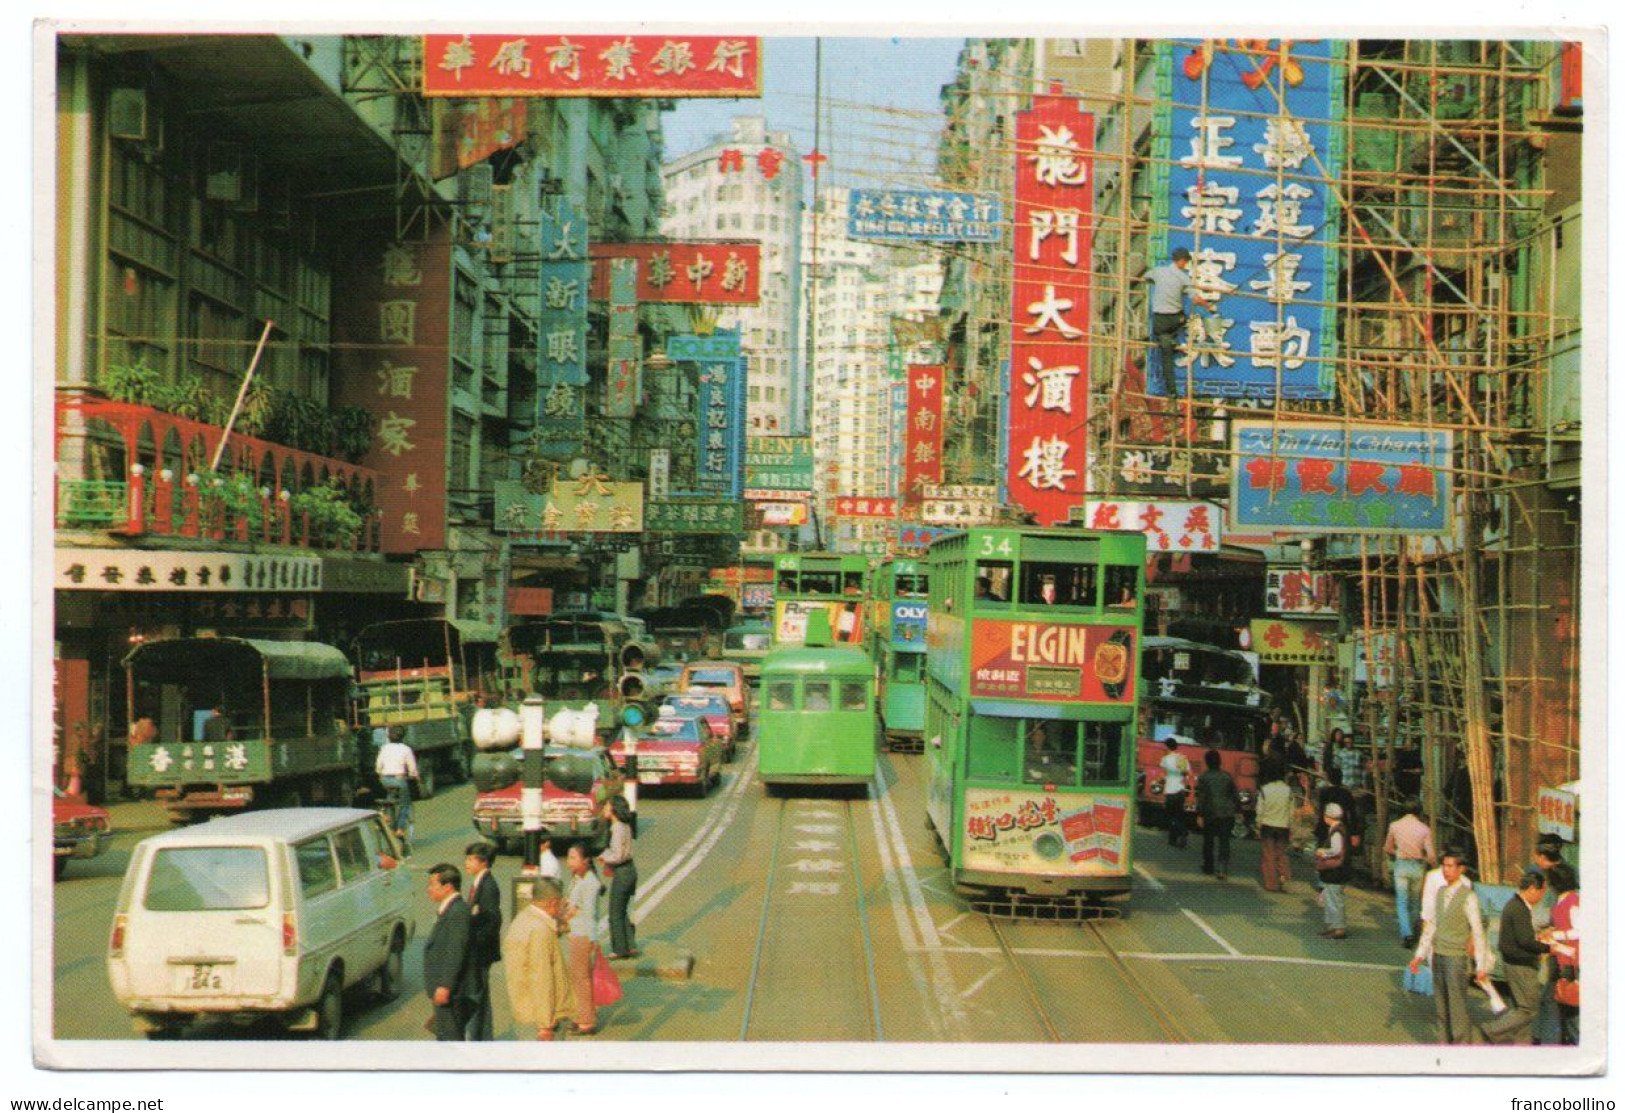 HONG KONG - A TYPICAL HONG KONG STREETSCENE / OLD CARS / TRAMWAY - Chine (Hong Kong)